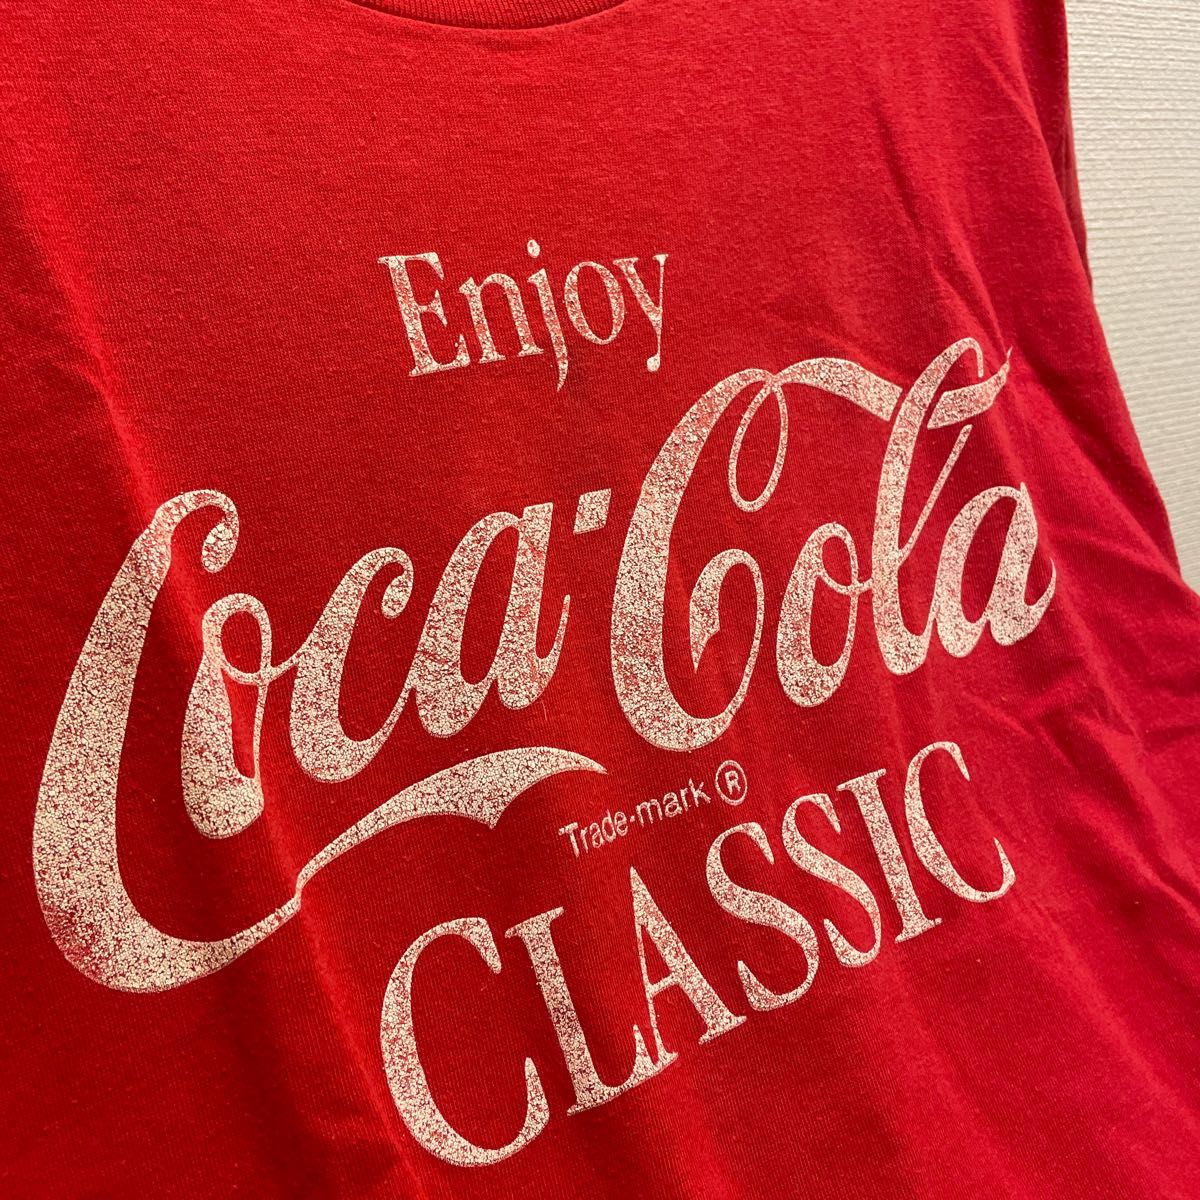 コカコーラ ヴィンテージTシャツ Coca-Cola 古着 ベルベルジン